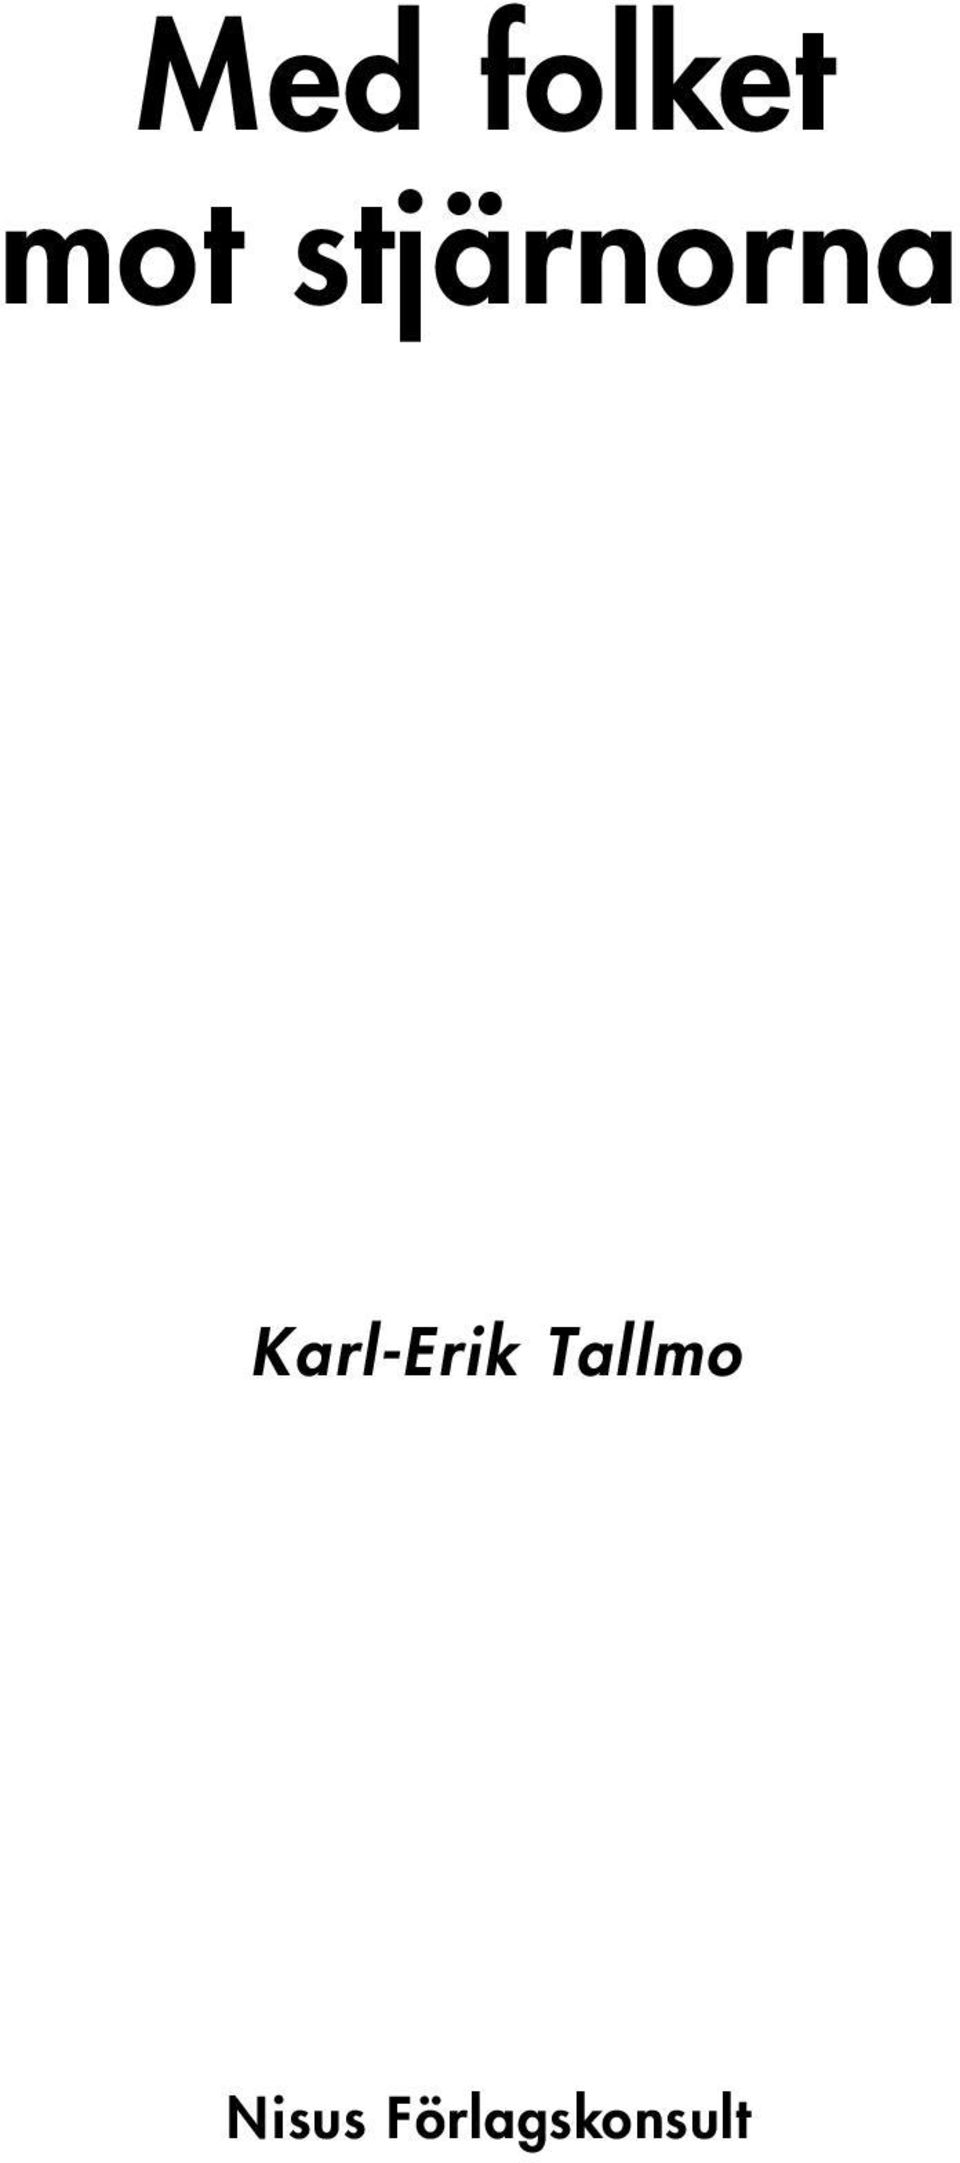 Karl-Erik